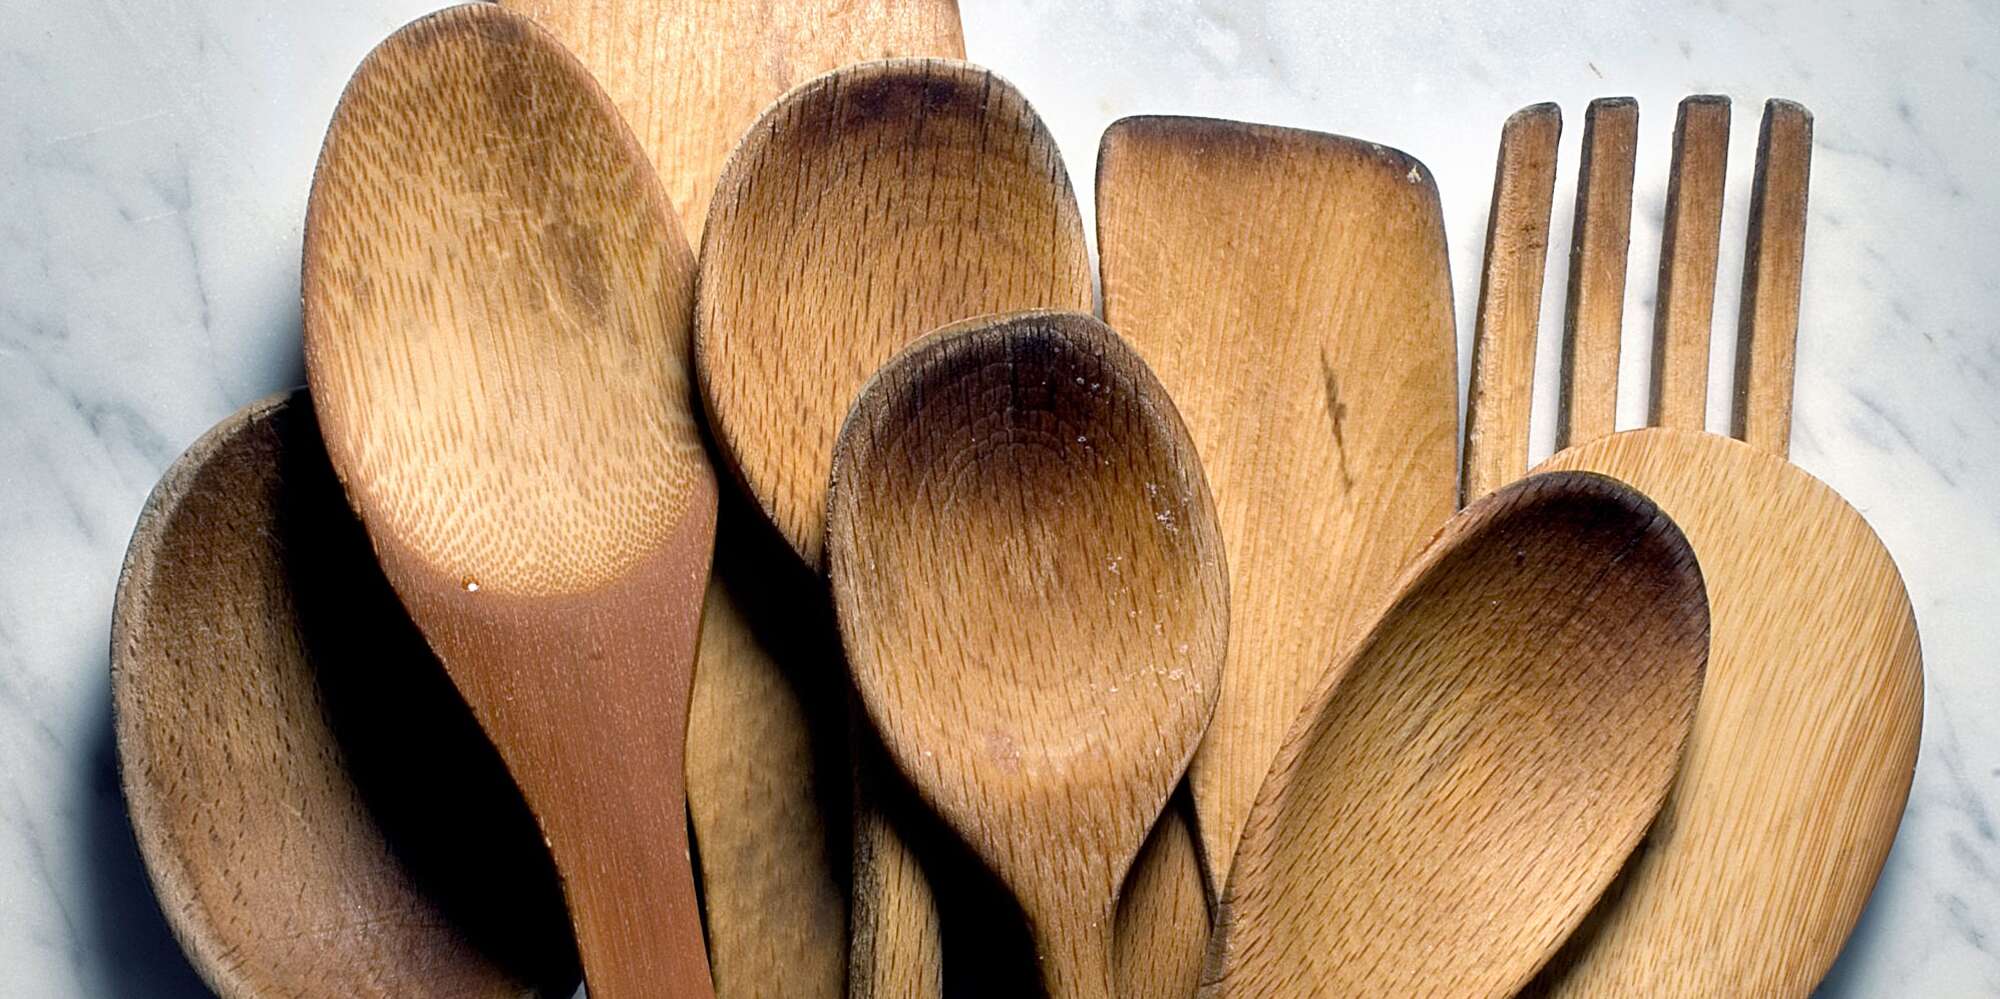 east indian utensils